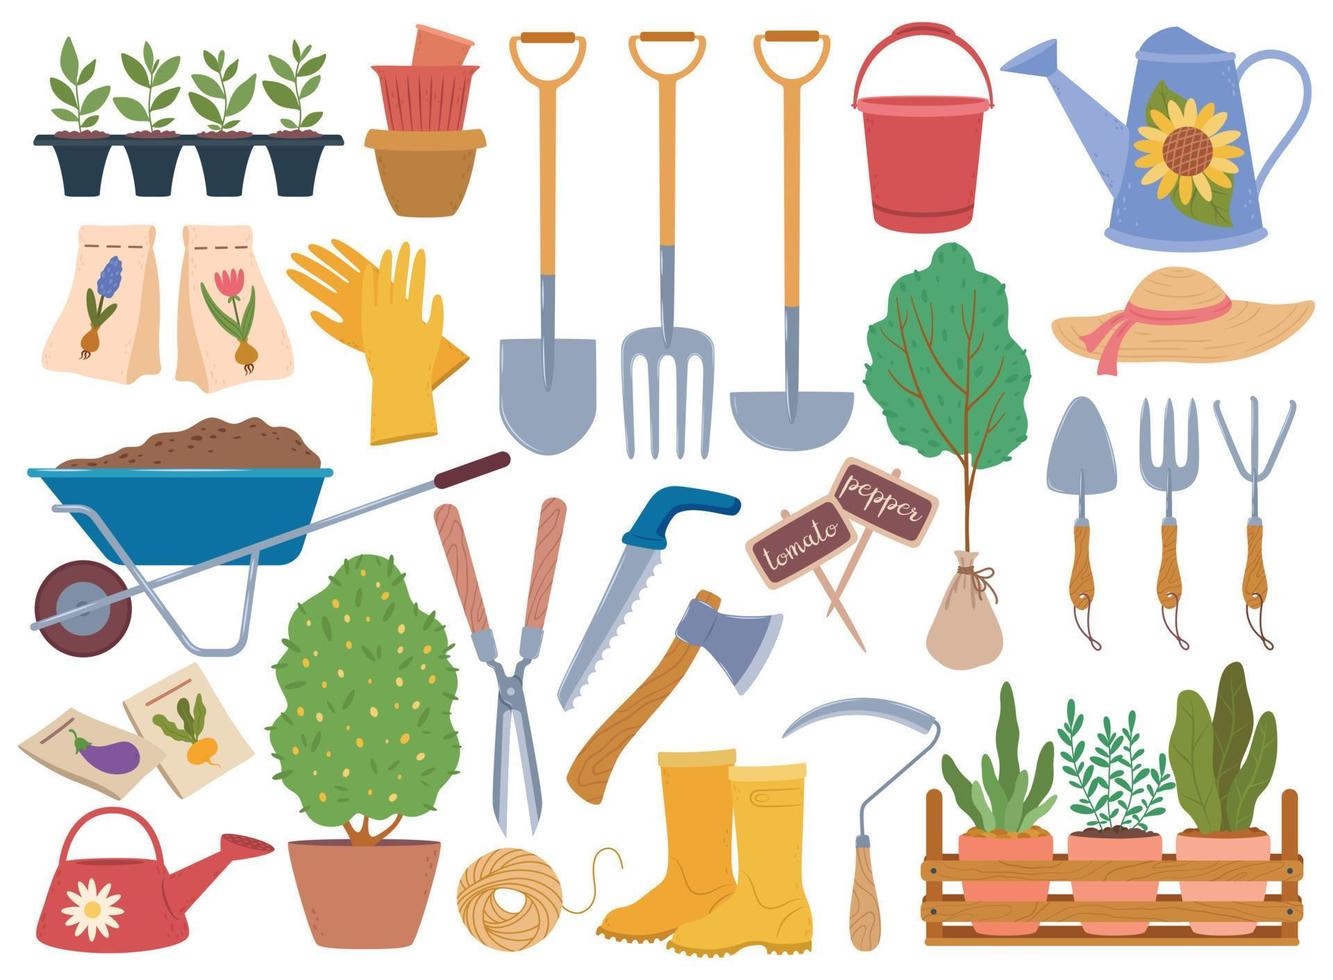 Gartenarbeit Werkzeug, Frühling Garten Ausrüstung und Pflanzen Setzling. Bewässerung dürfen, Handschuhe, Schubkarre mit Boden. Gartenbau Elemente Vektor einstellen